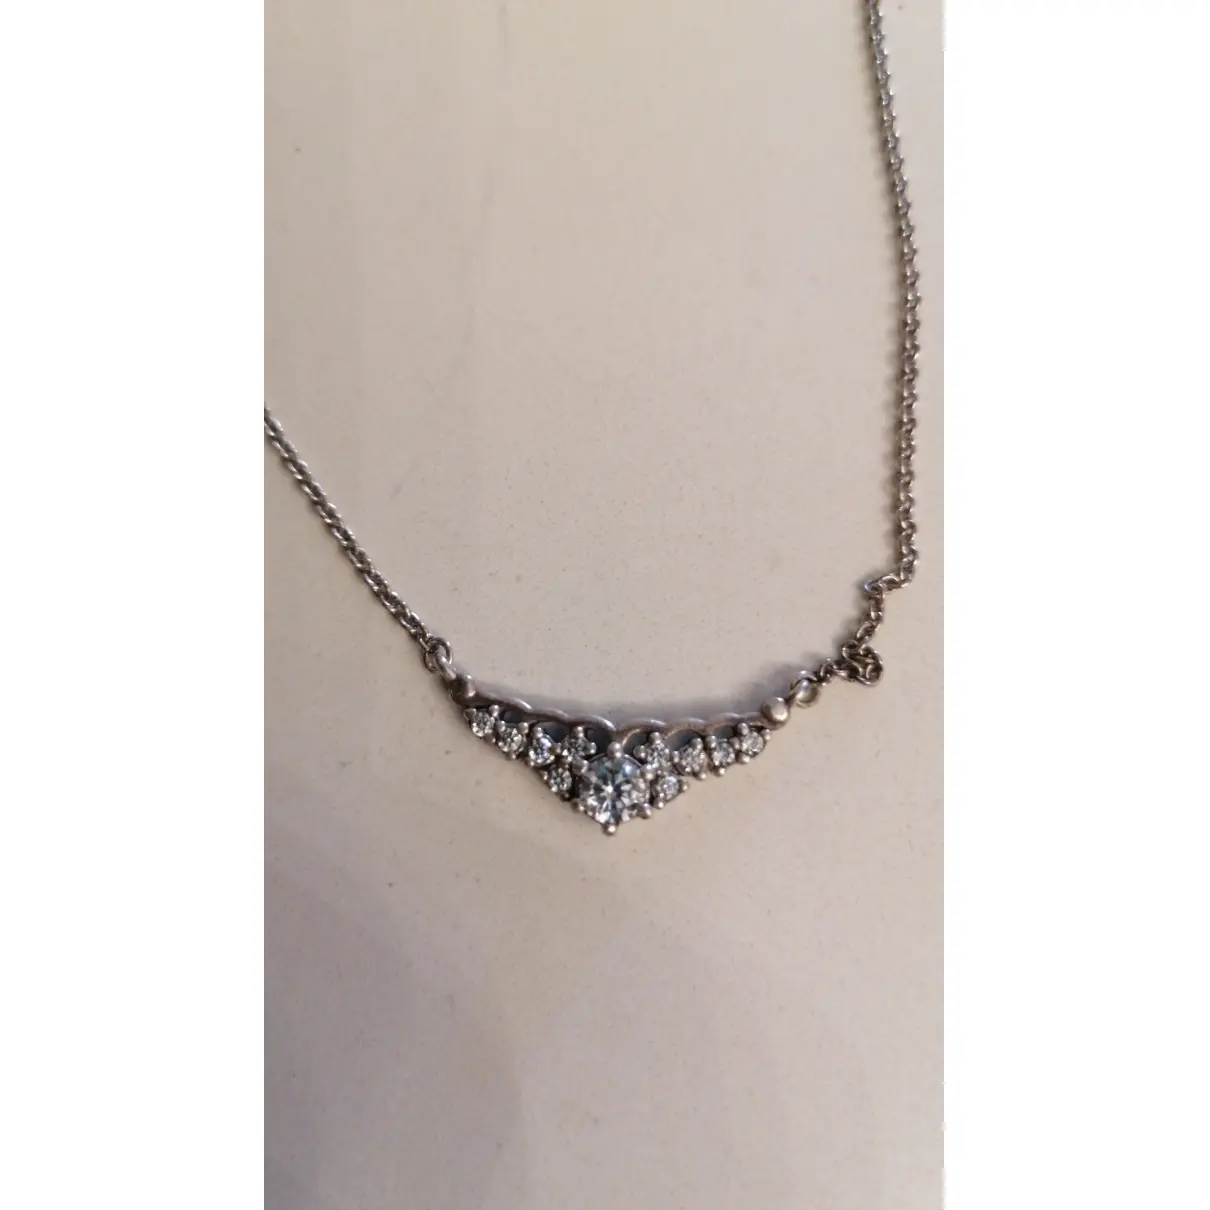 Buy Pandora Silver necklace online